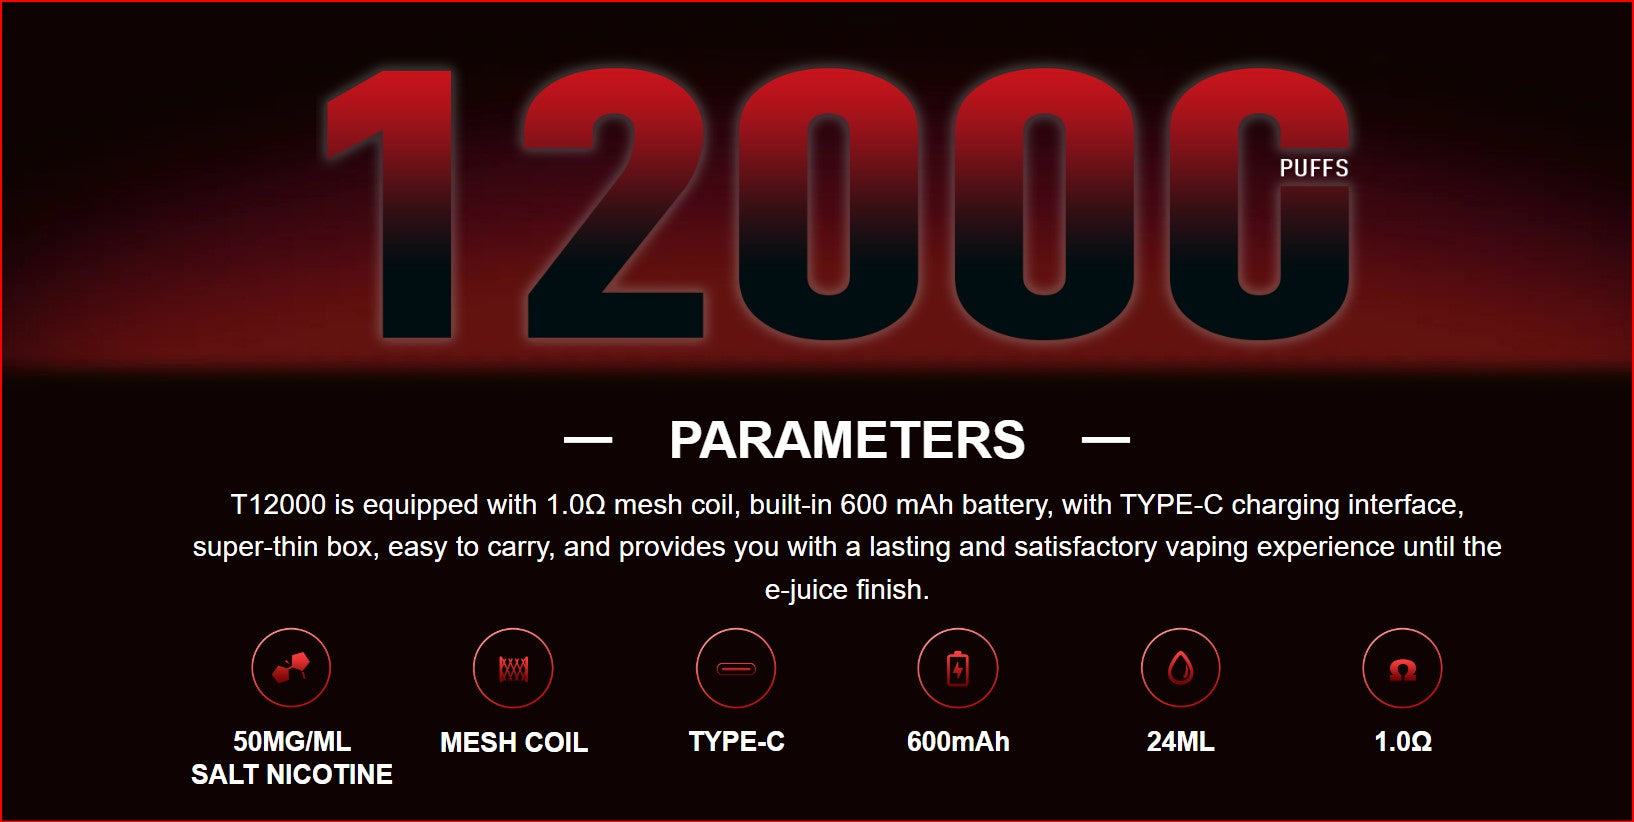 t12000 parameters